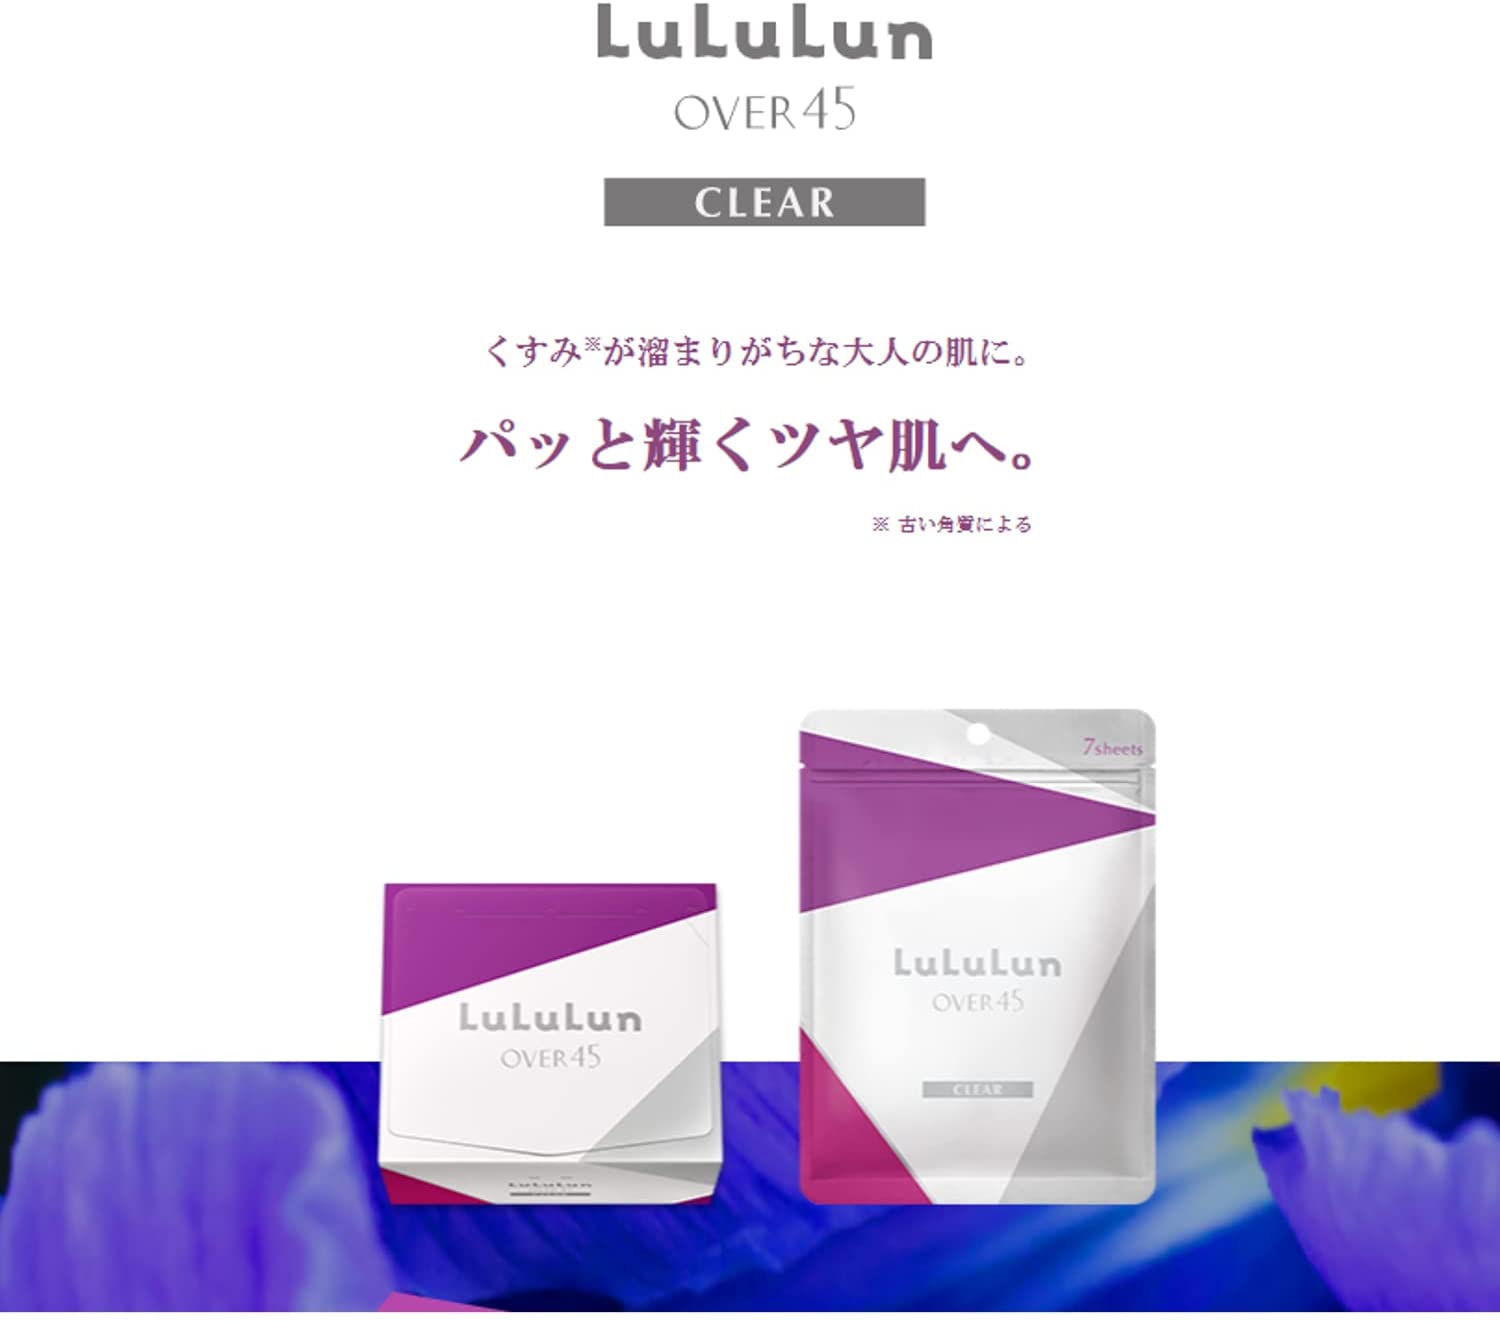 LuLuLun(ルルルン) Over45 アイリスブルー(クリア)の商品画像6 